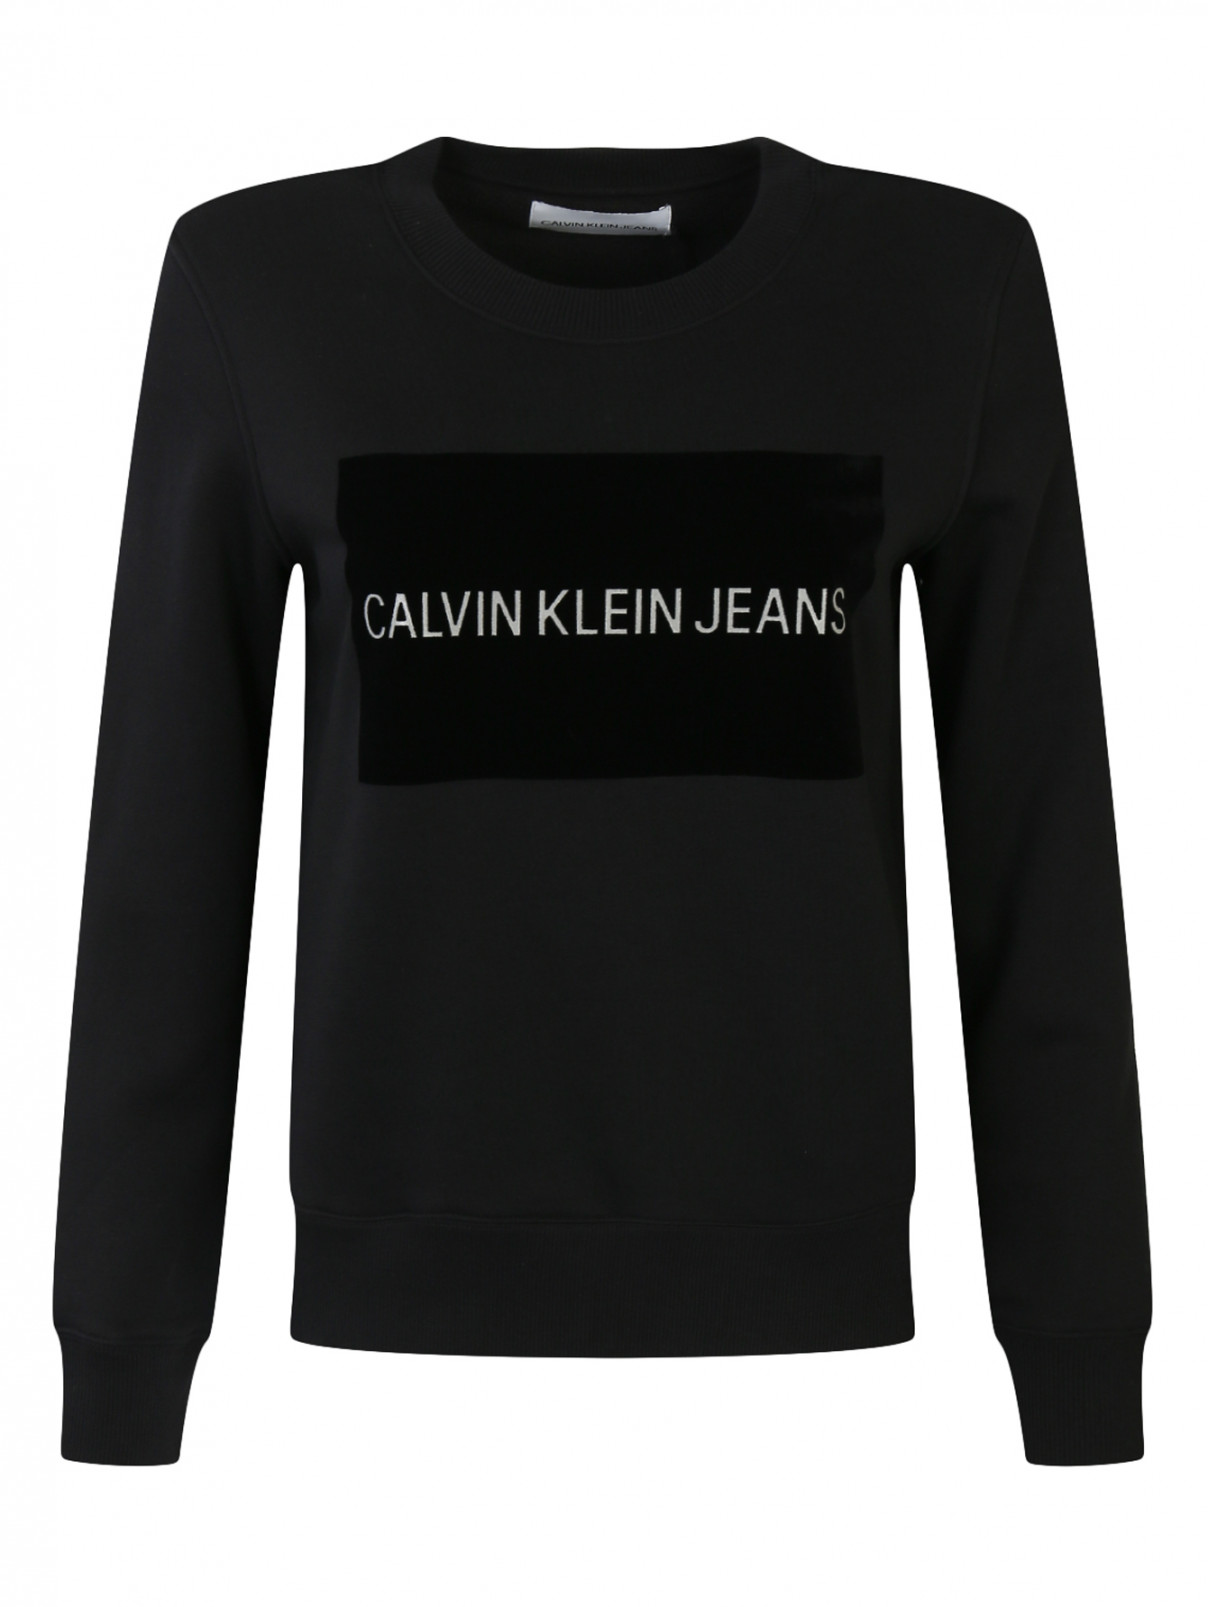 Свитшот из хлопка с принтом Calvin Klein  –  Общий вид  – Цвет:  Черный